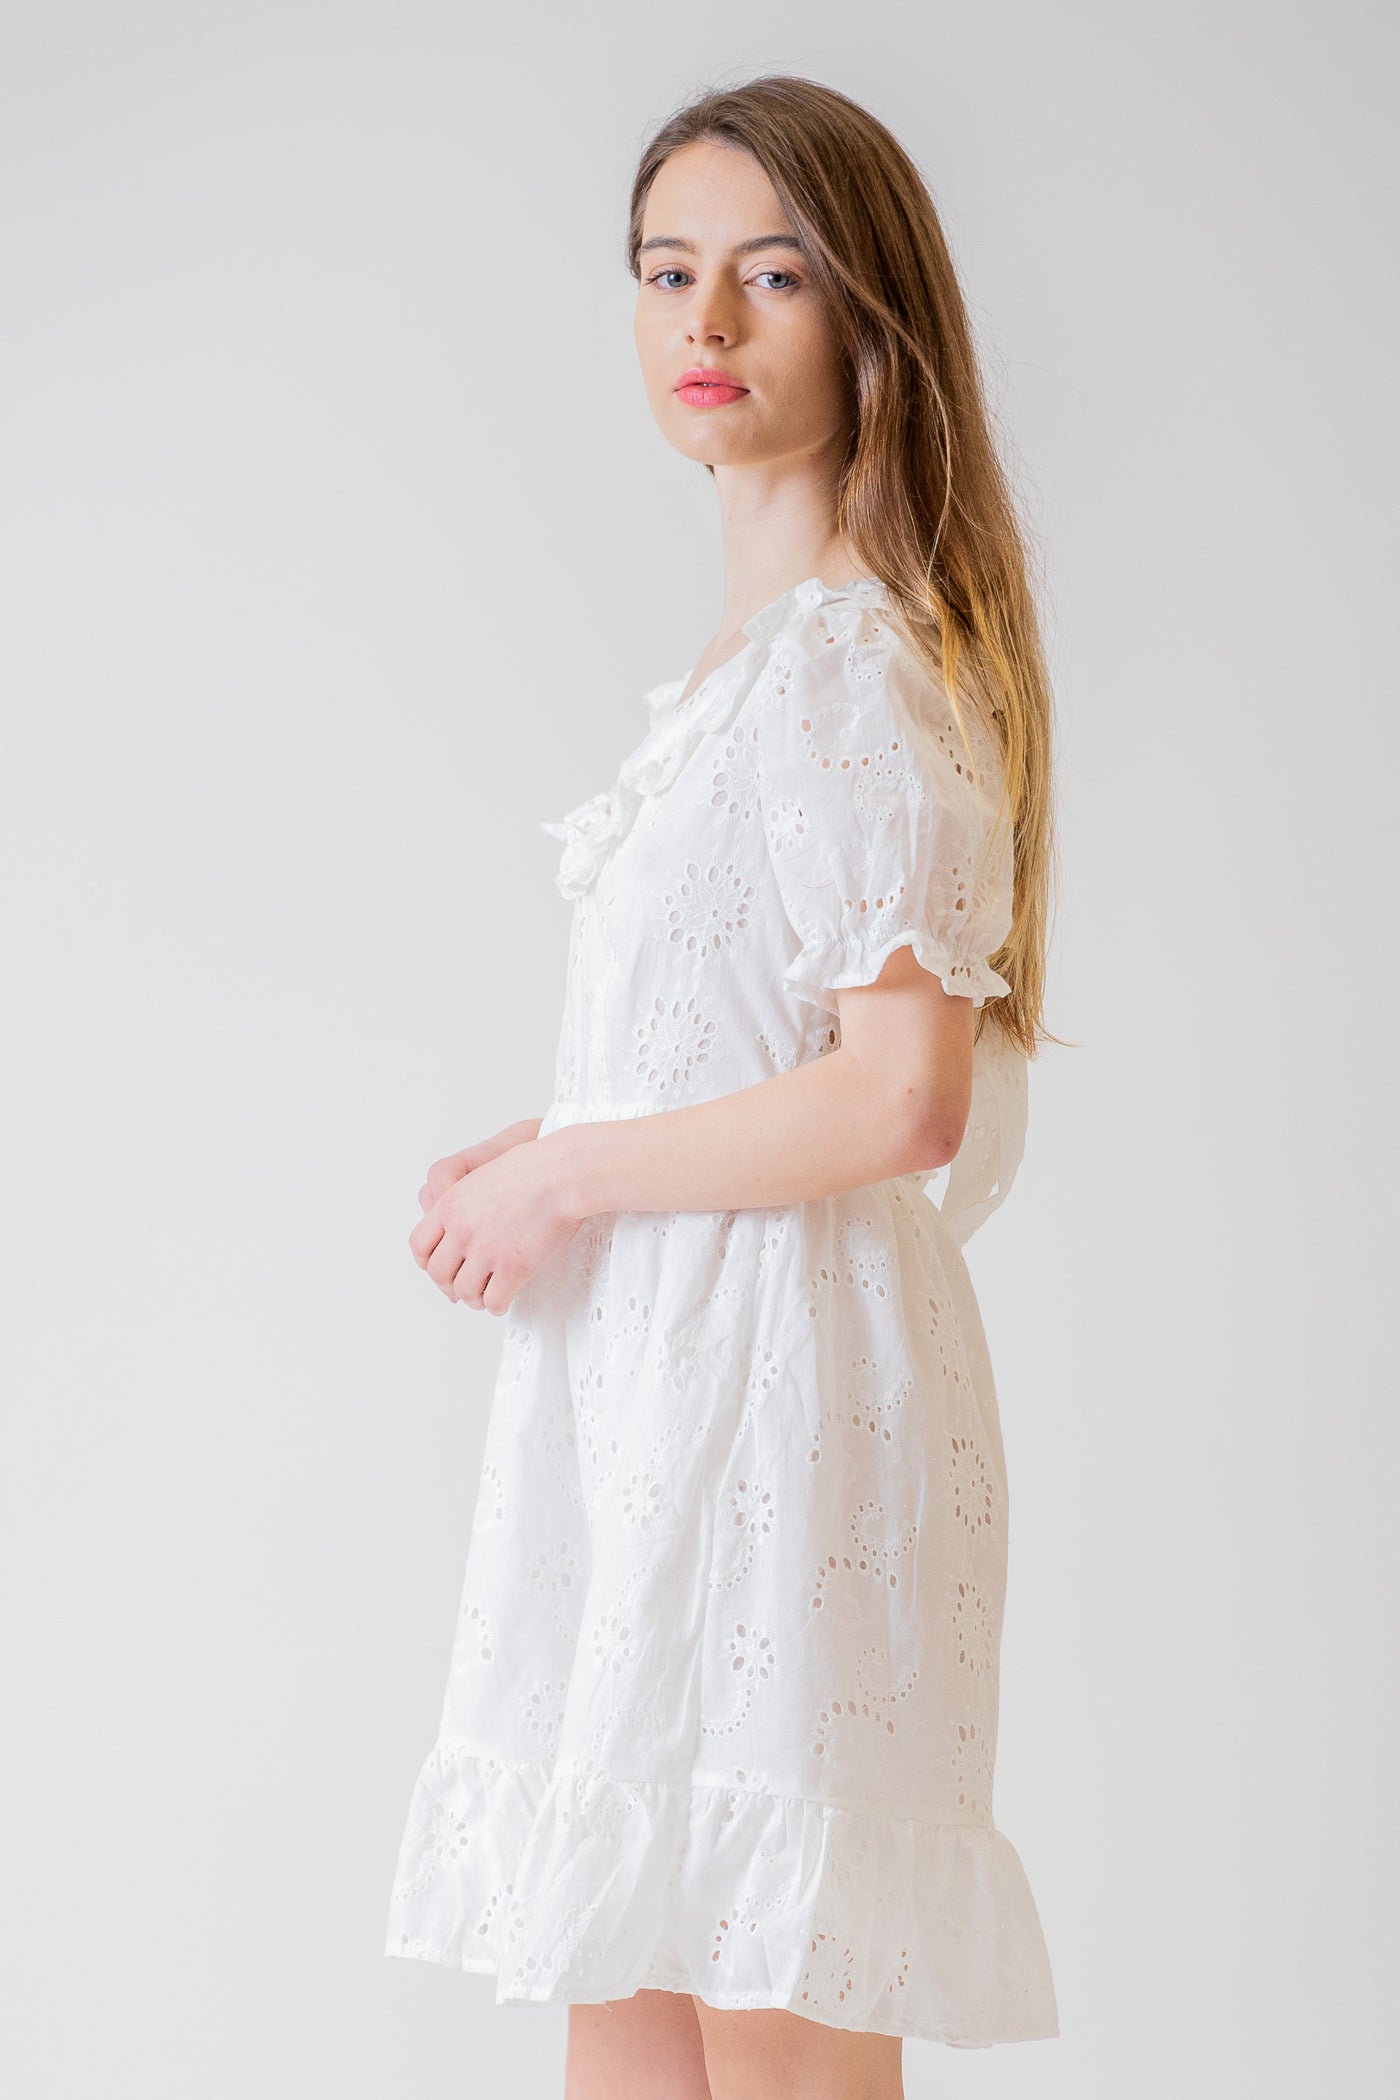 Biele madeirové šaty na viazanie - Šaty